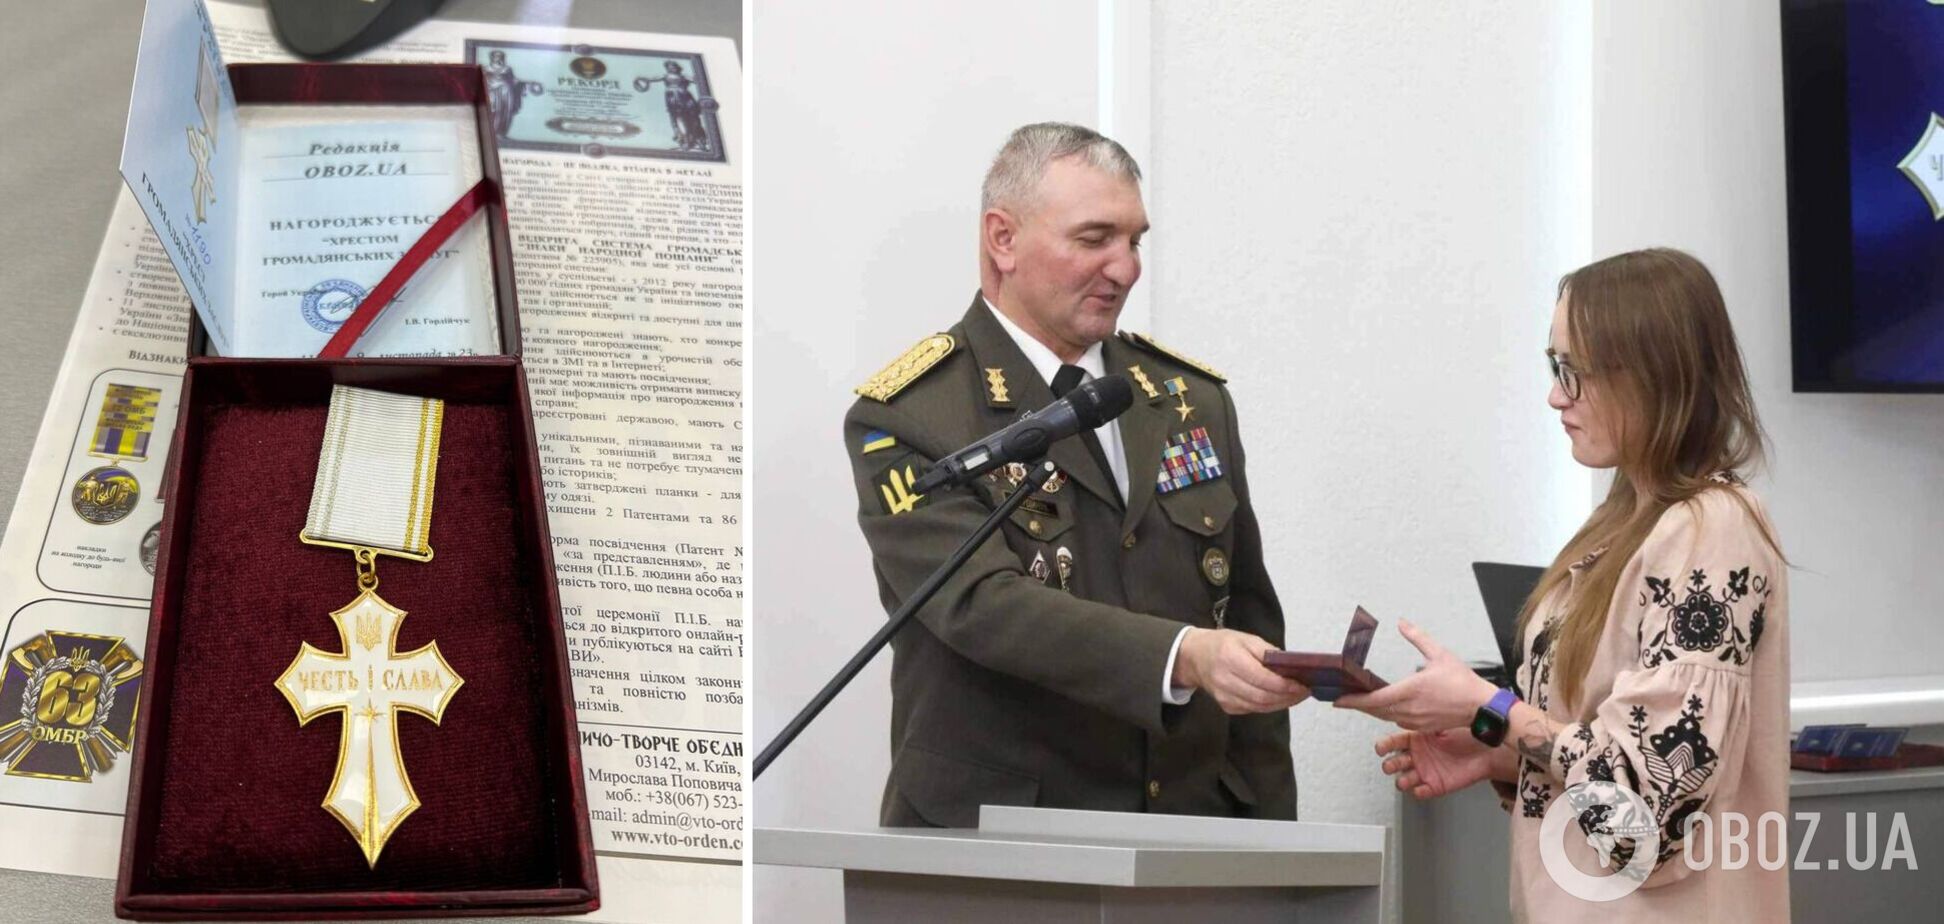  OBOZ.UA отримав нагороду 'Хрест громадянських заслуг' за наближення перемоги у війні з Росією. Фото